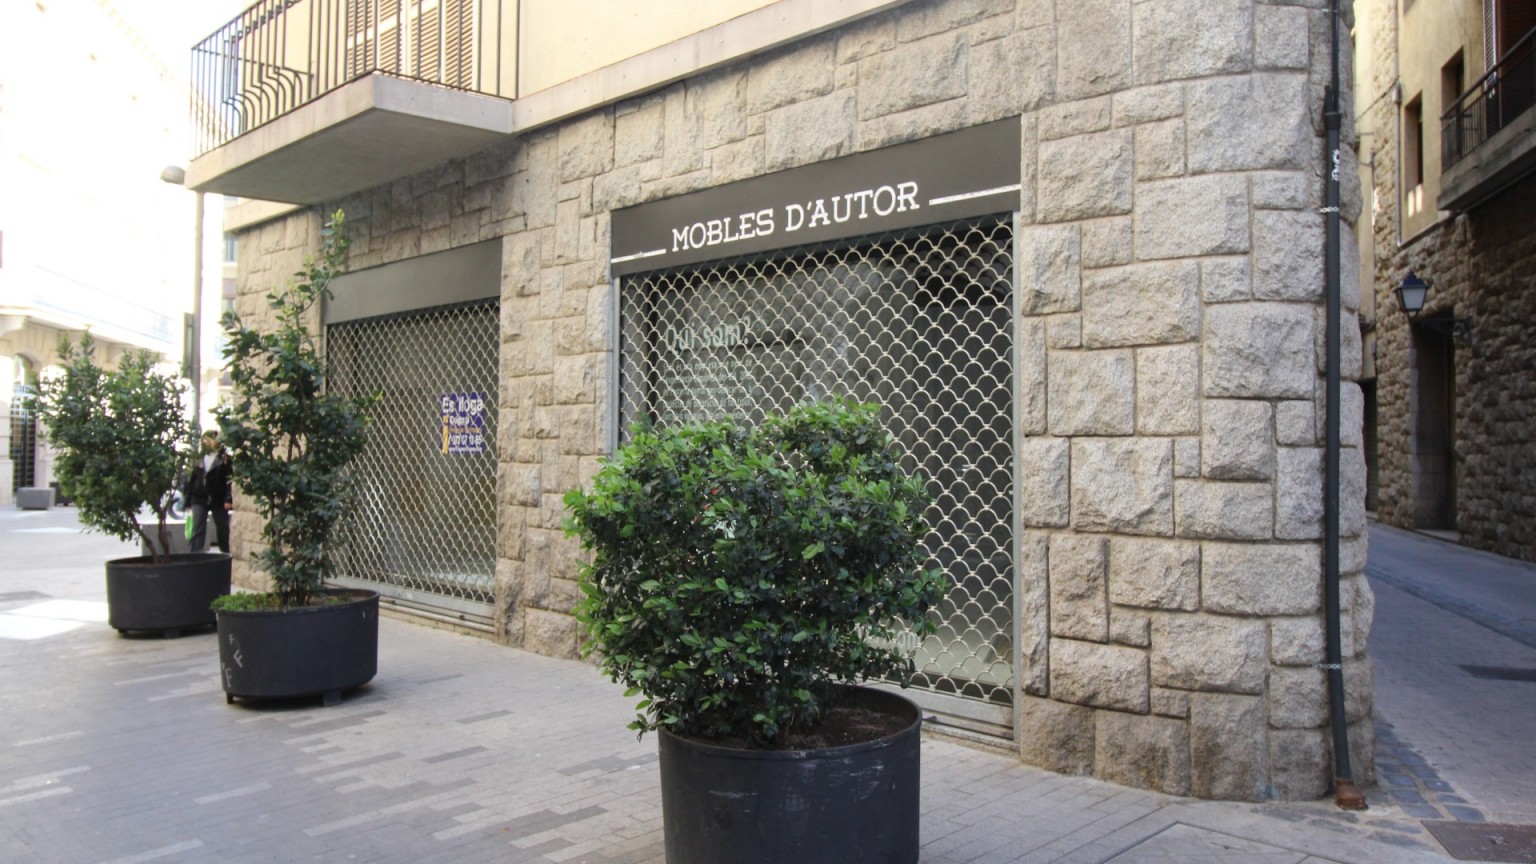 Local de lloguer, en el centre de Figueres.